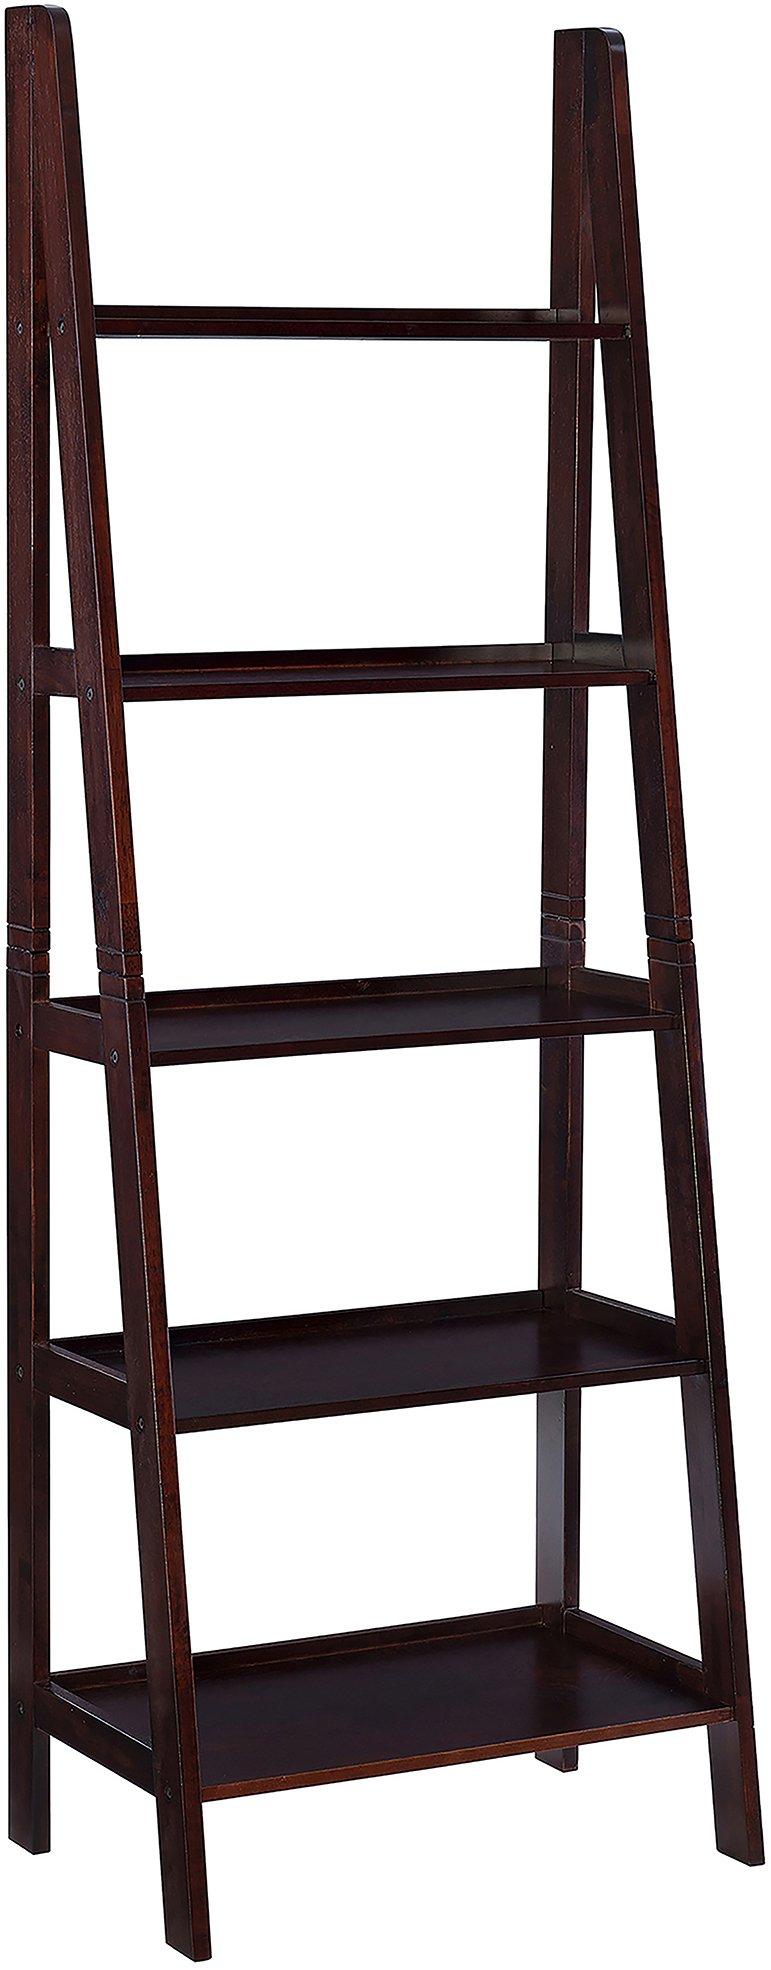 Adara Ladder Display Shelf - 35x17x72